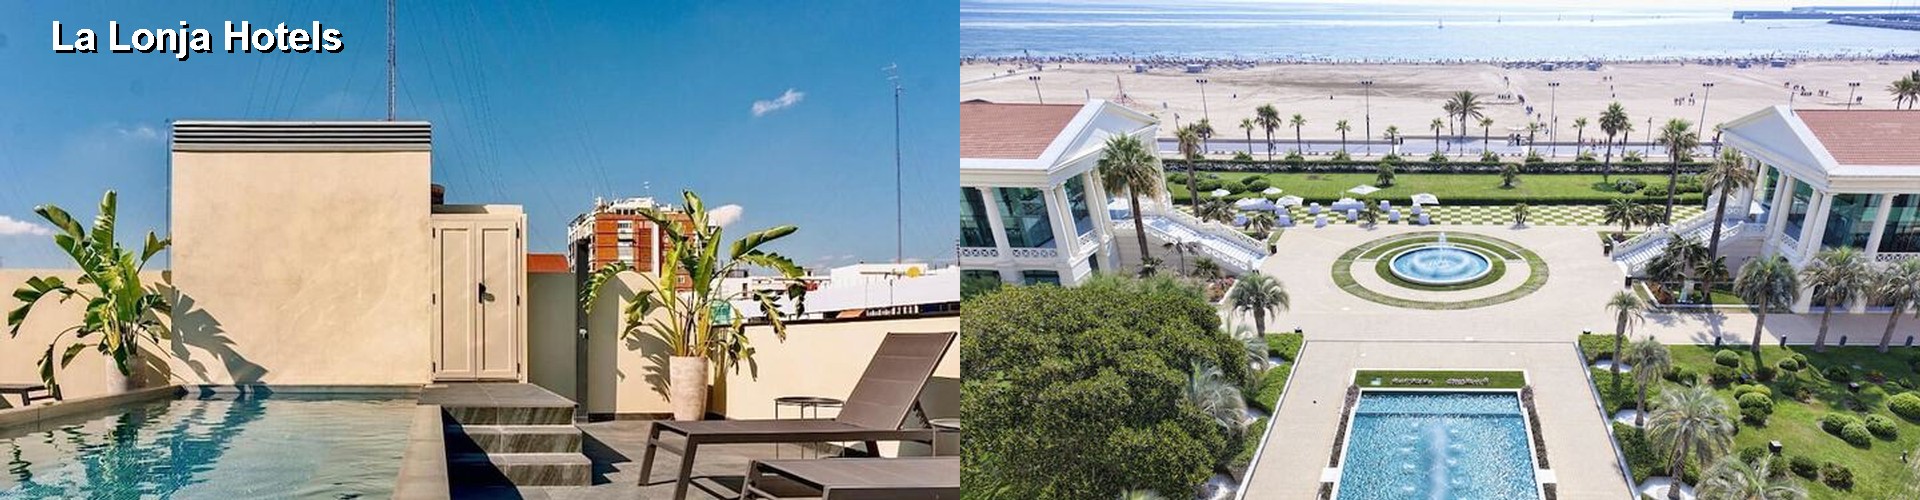 5 Best Hotels near La Lonja